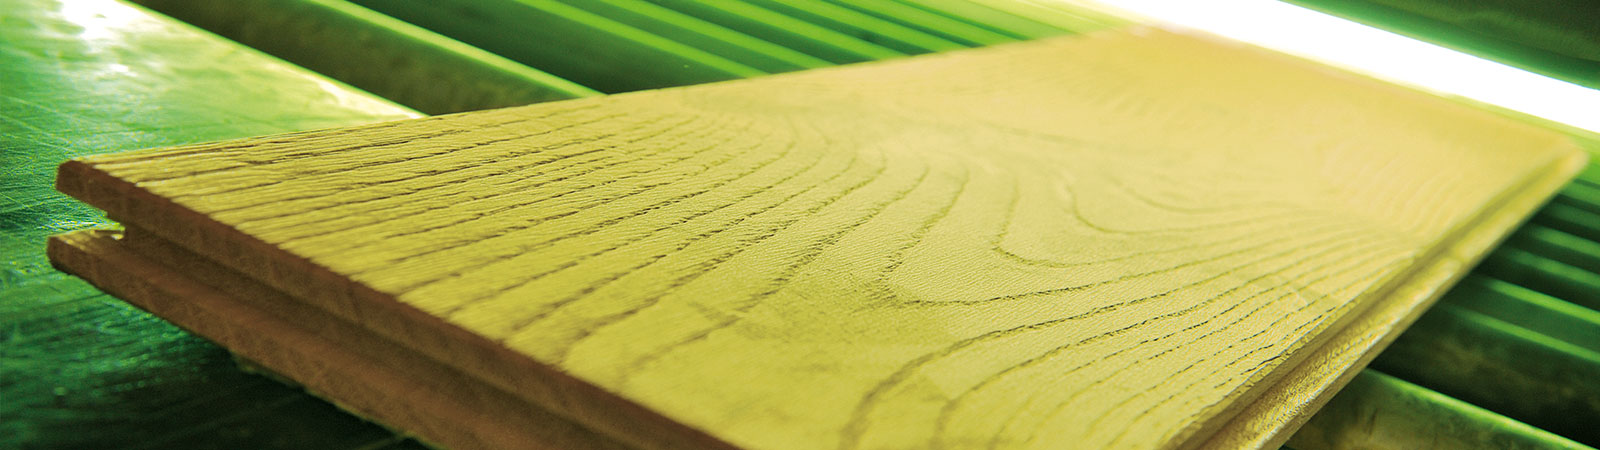 Osmo Maschinen - individuelle und industrielle Holzbeschichtung mit unseren Beschichtungsanlagen für Profilholz mit Osmo Farbe